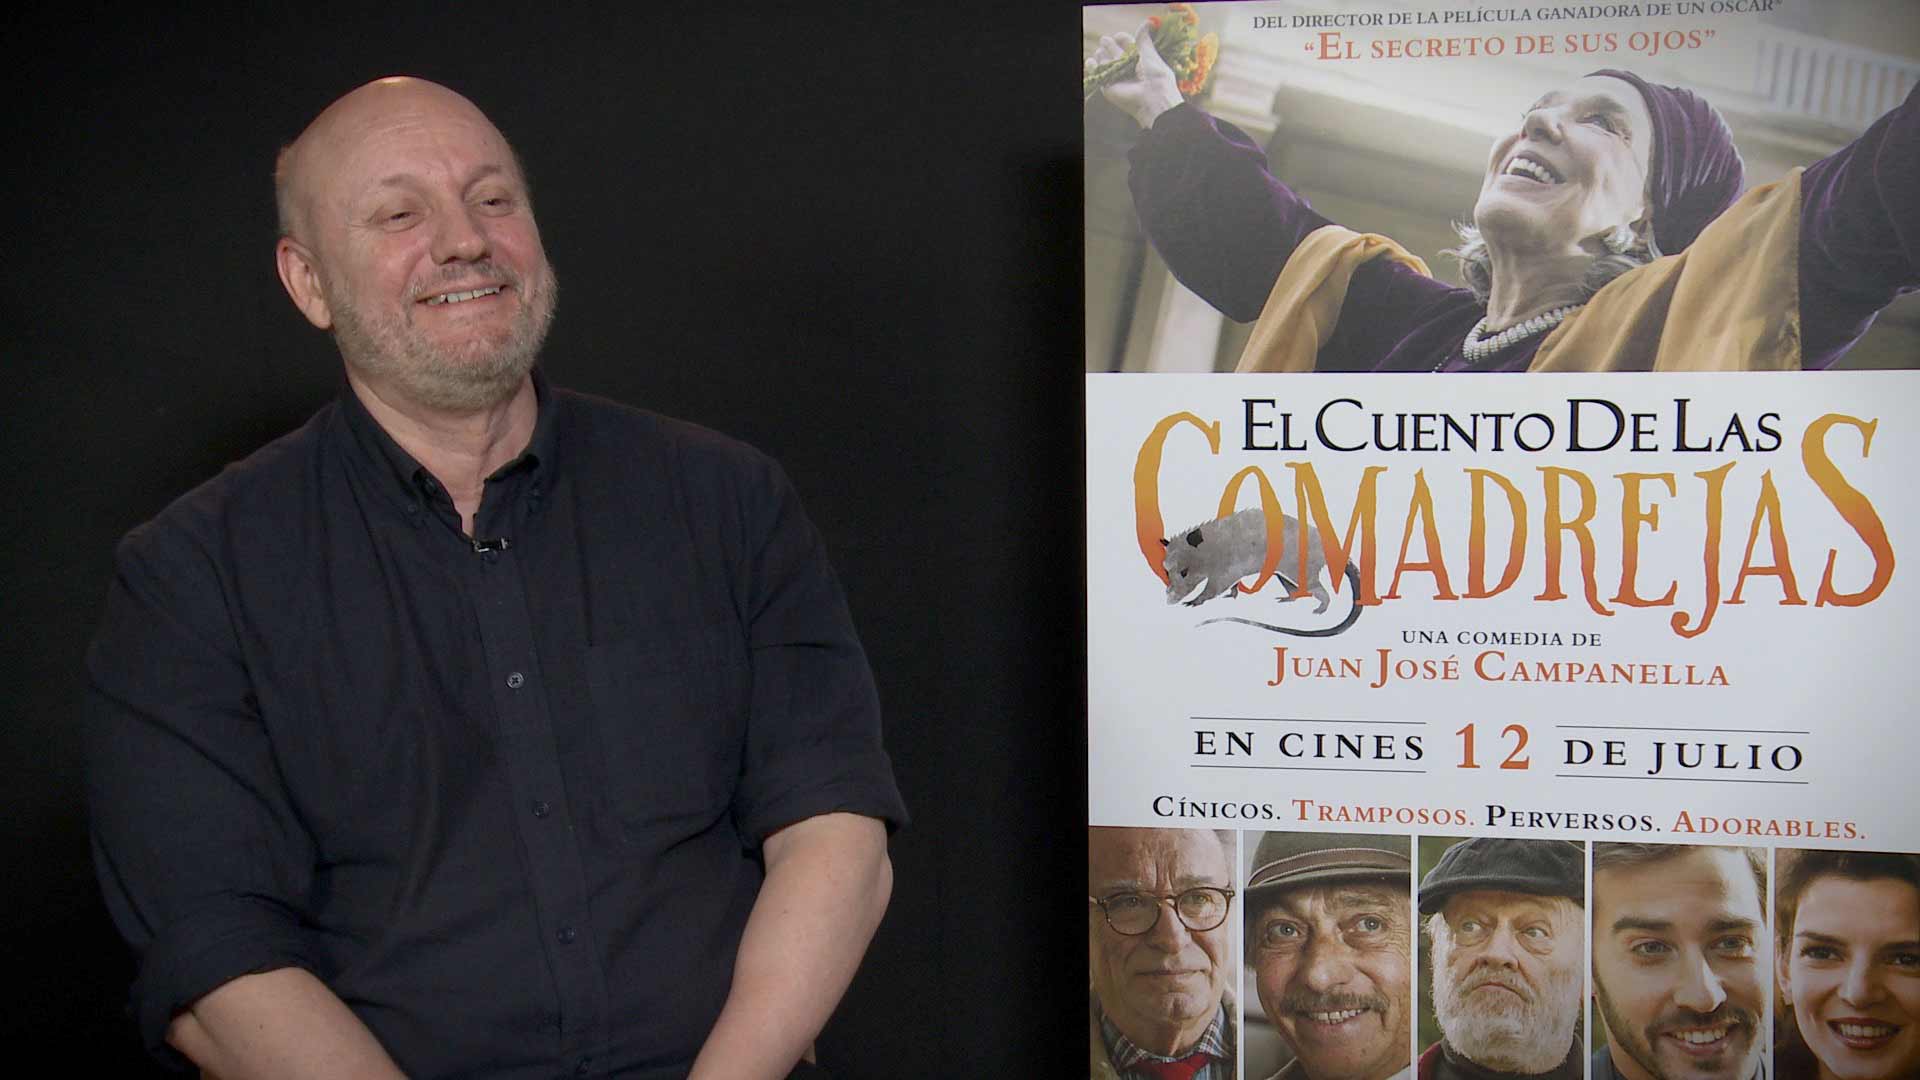 El cuento de las comadrejas: Entrevista al director Juan José Campanella